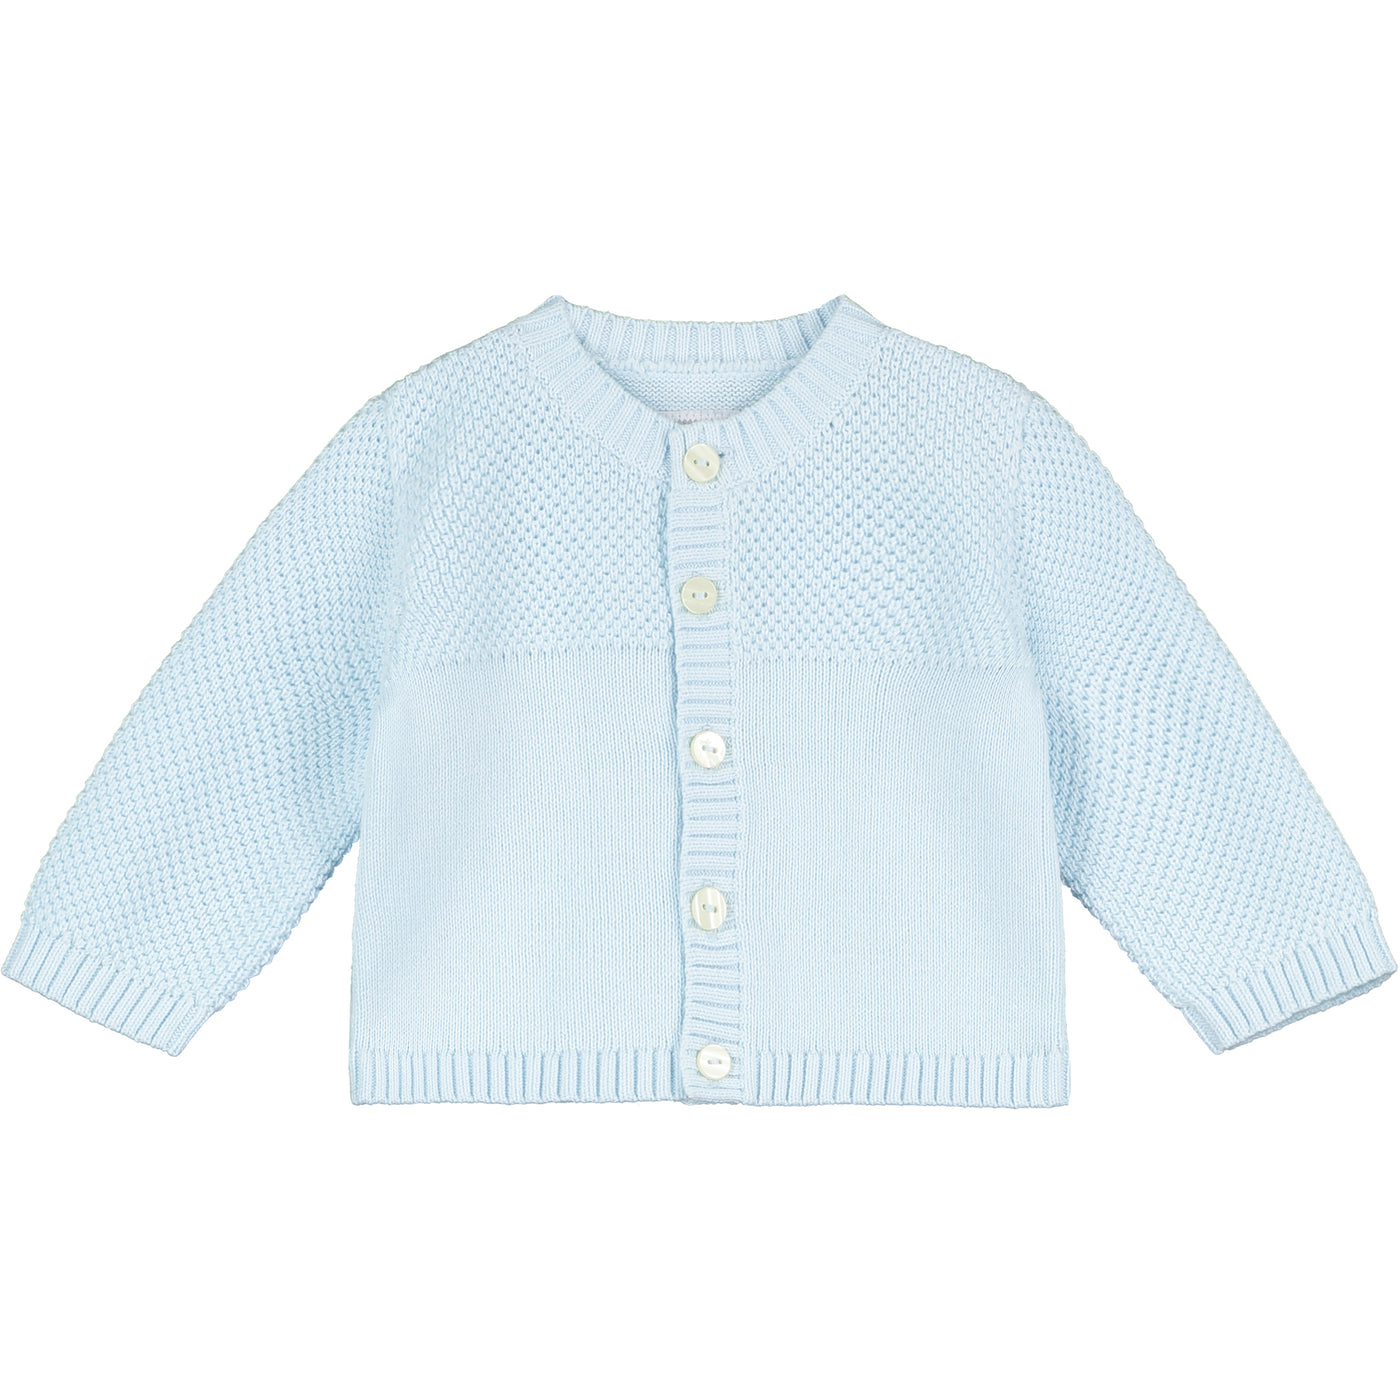 Cypress Blue Knit Baby Cardigan